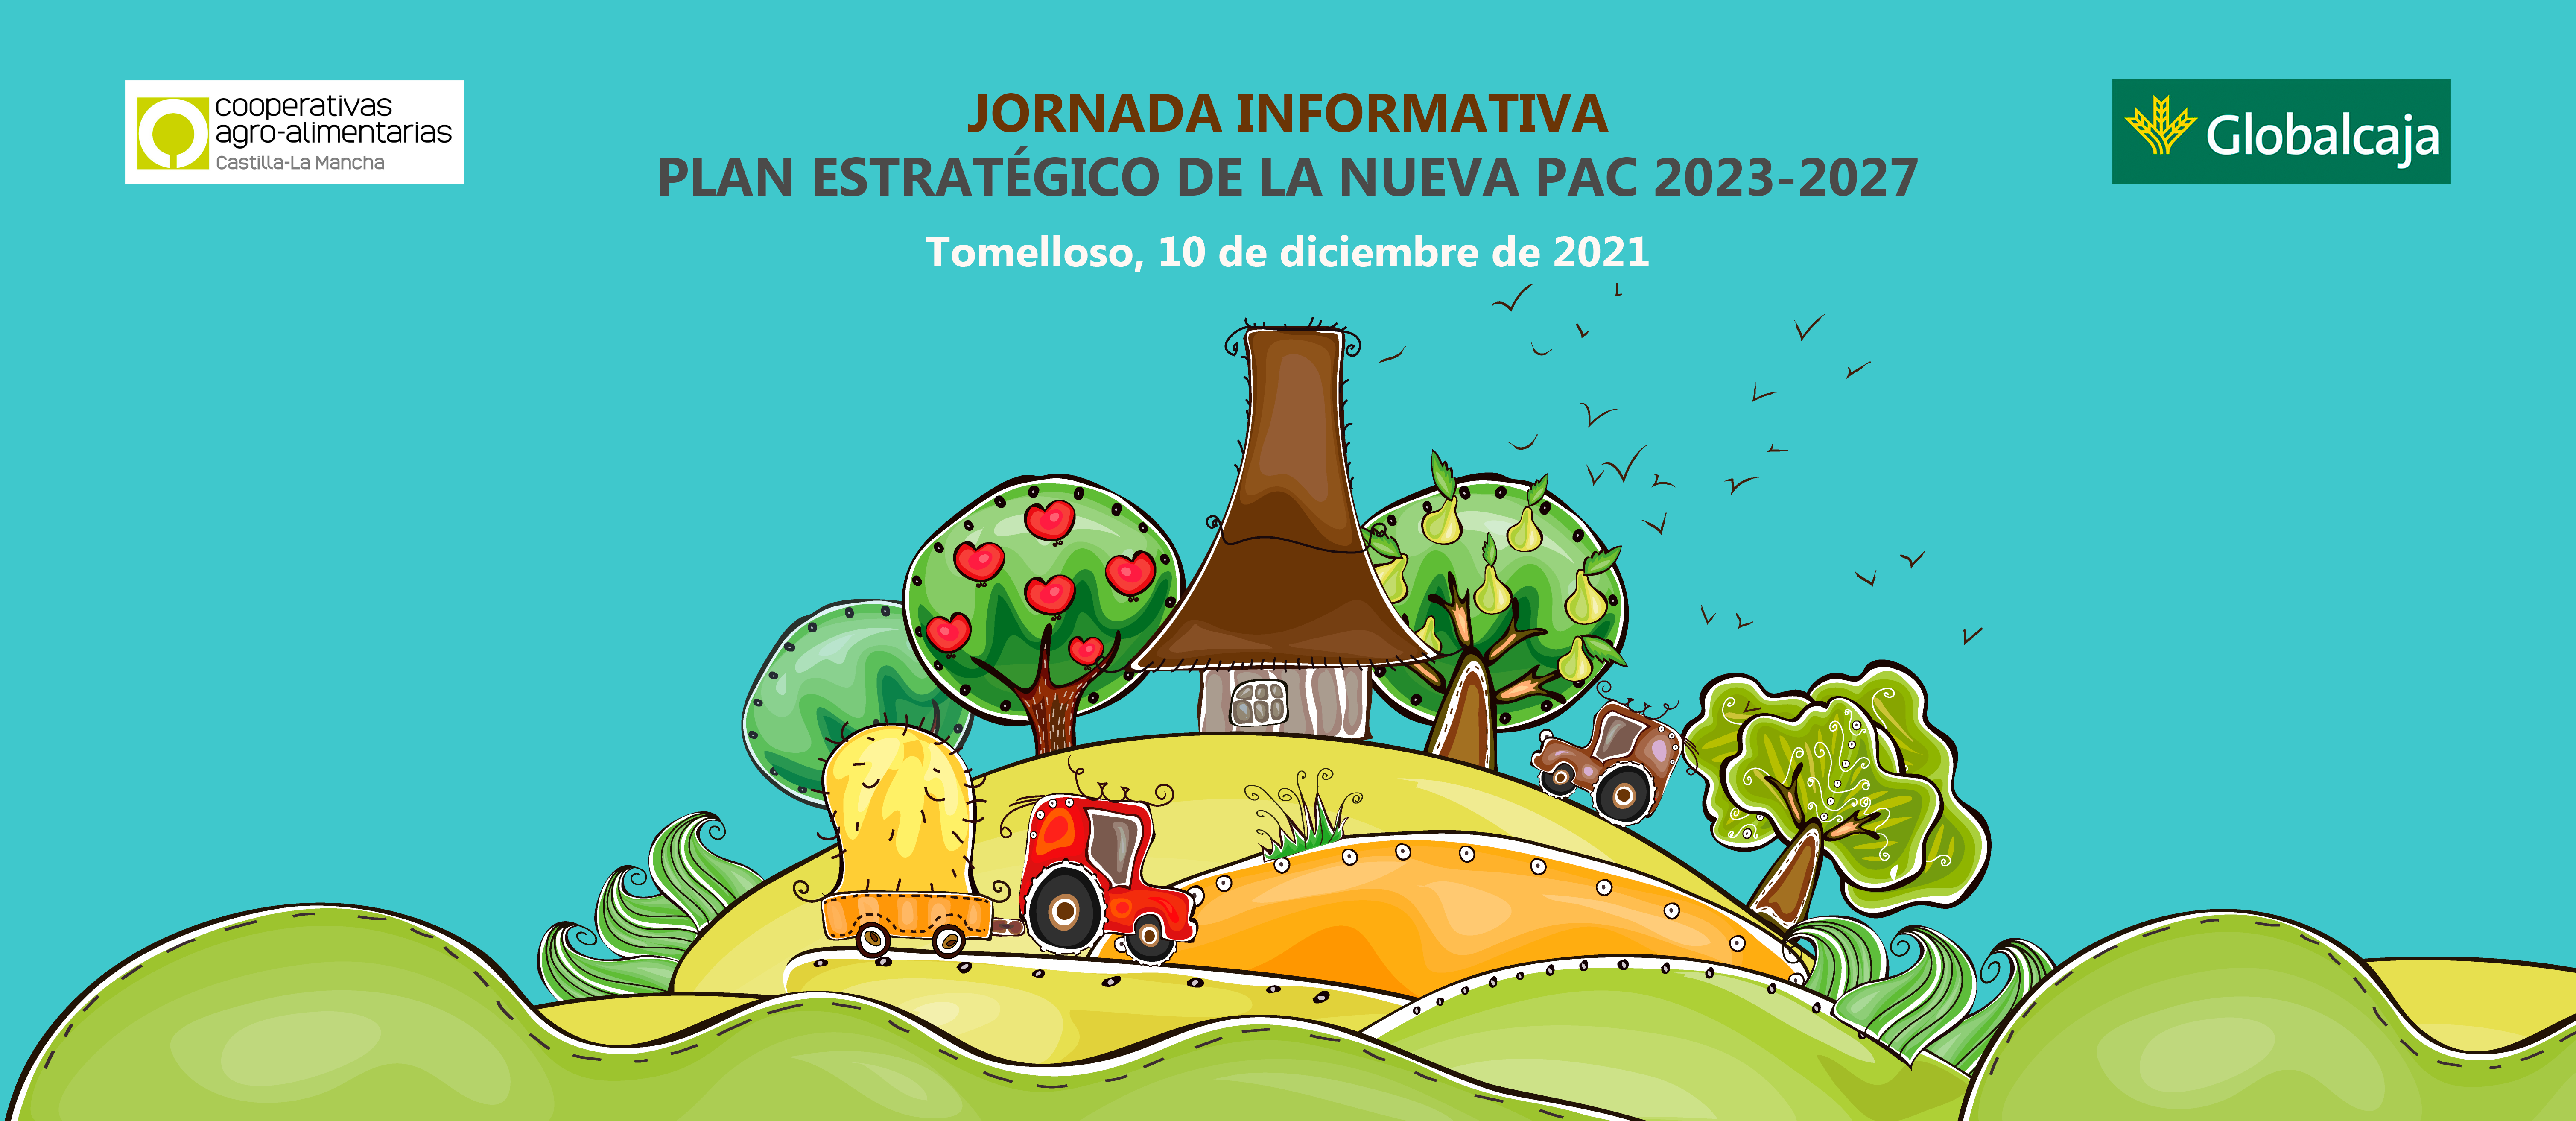 Cooperativas Agro-alimentarias celebrará el próximo 10 de diciembre la primera Jornada Regional sobre la nueva PAC 2023-2027